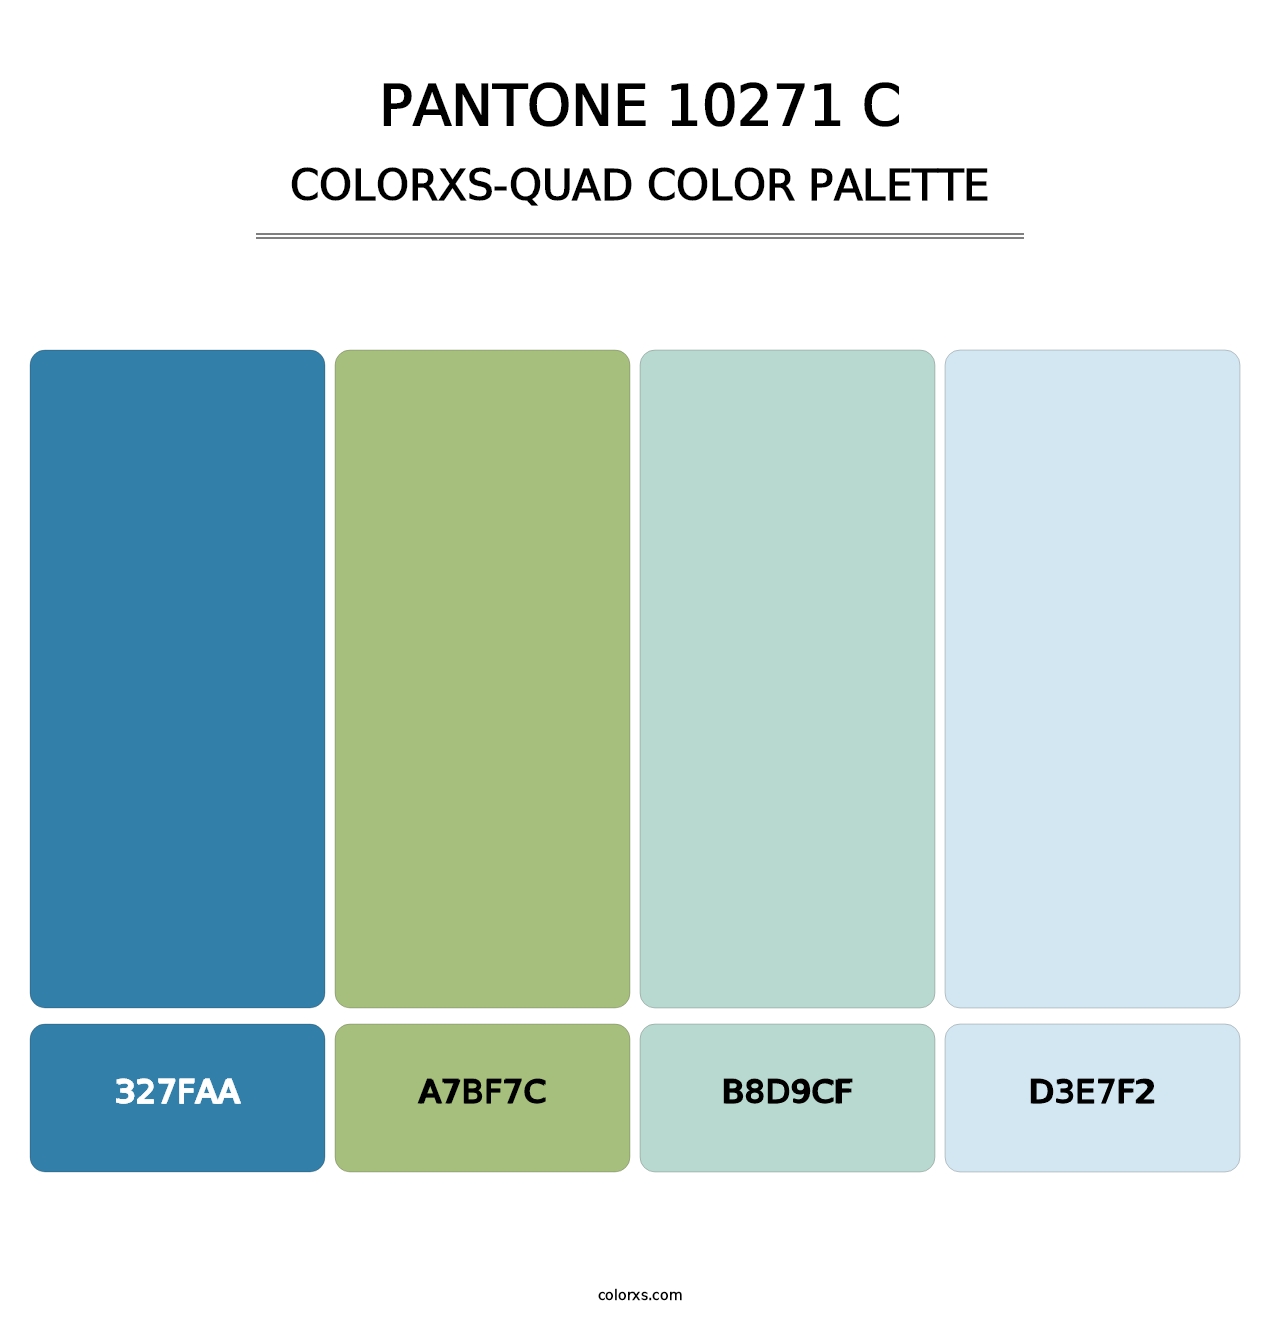 PANTONE 10271 C - Colorxs Quad Palette